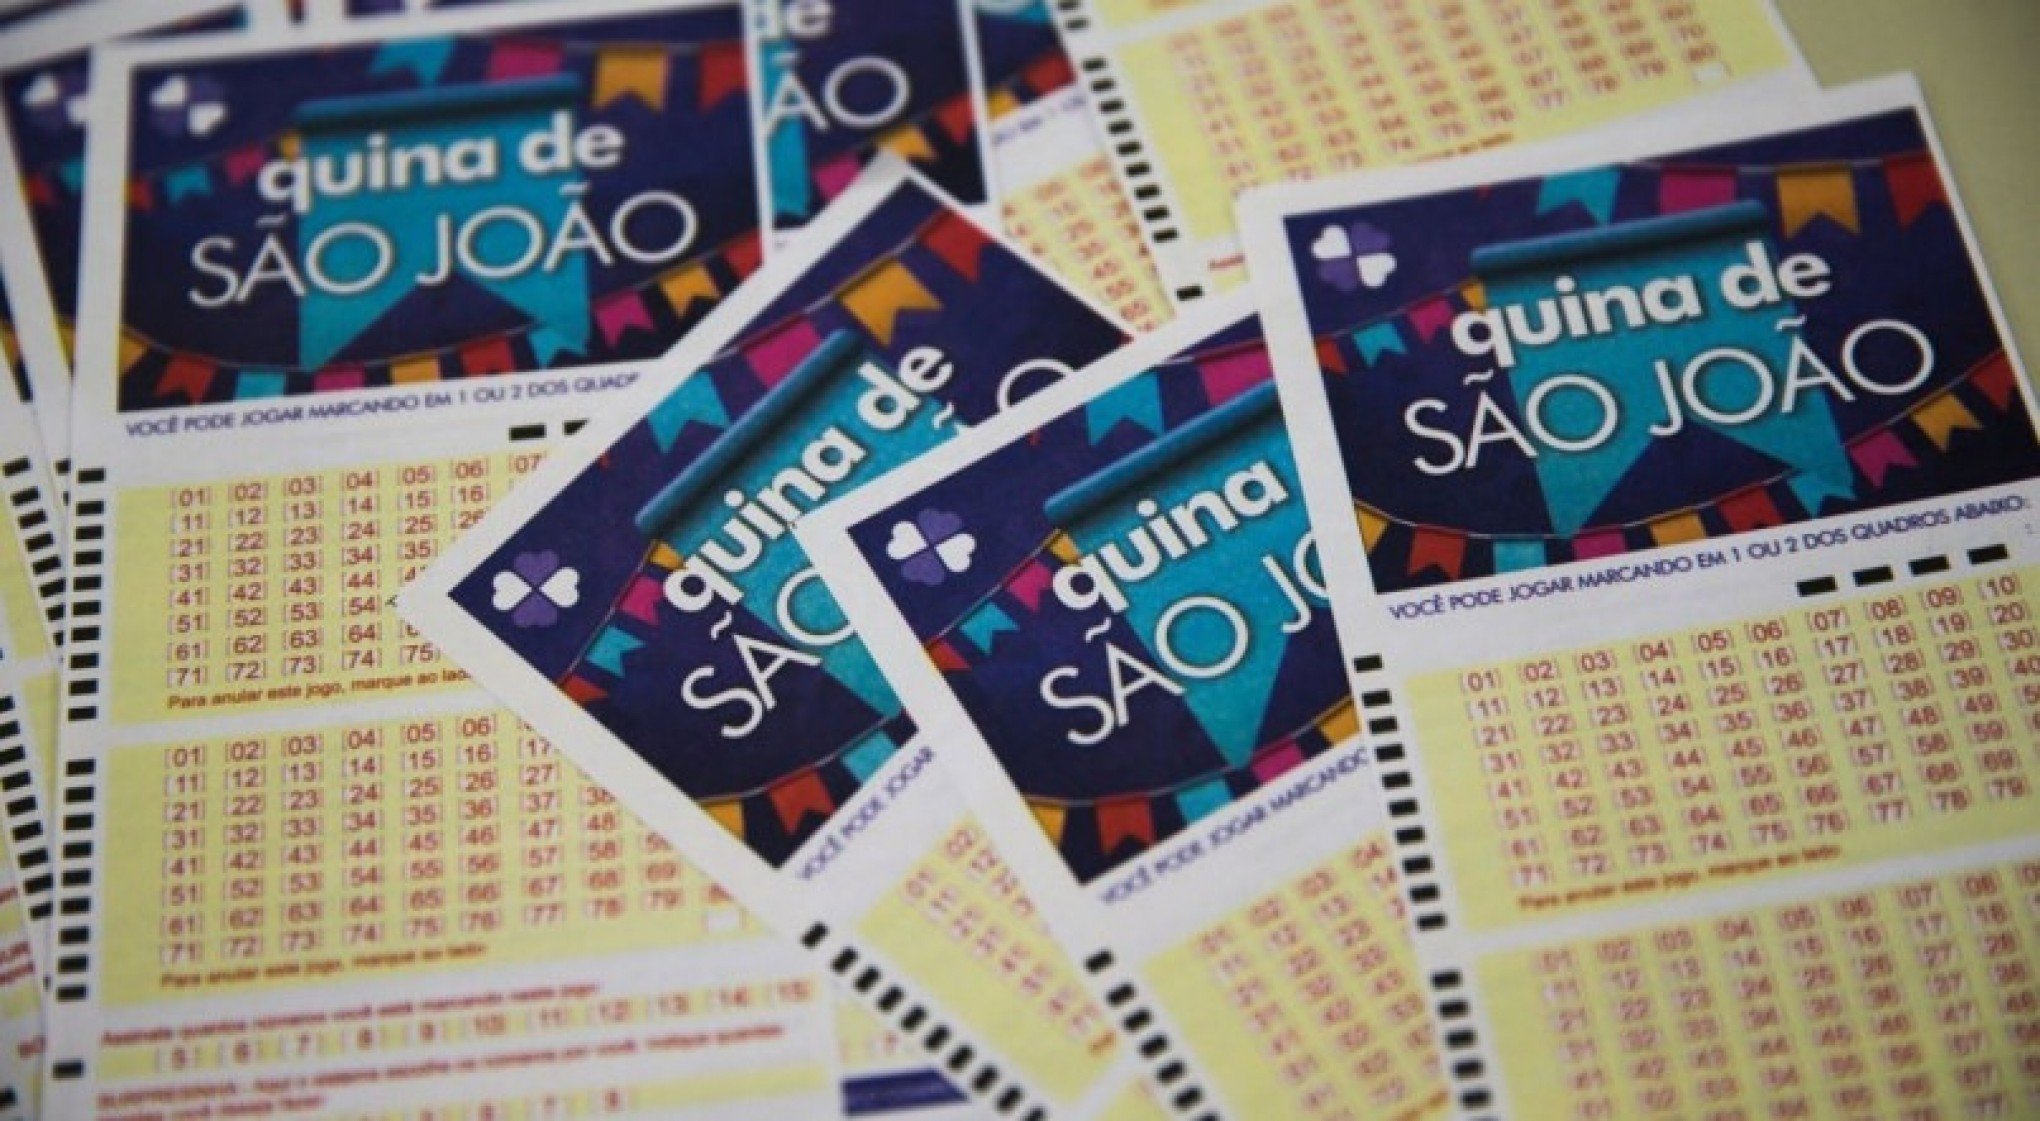 Mega-Sena sorteia prêmio de R$ 20 milhões neste sábado, Loterias